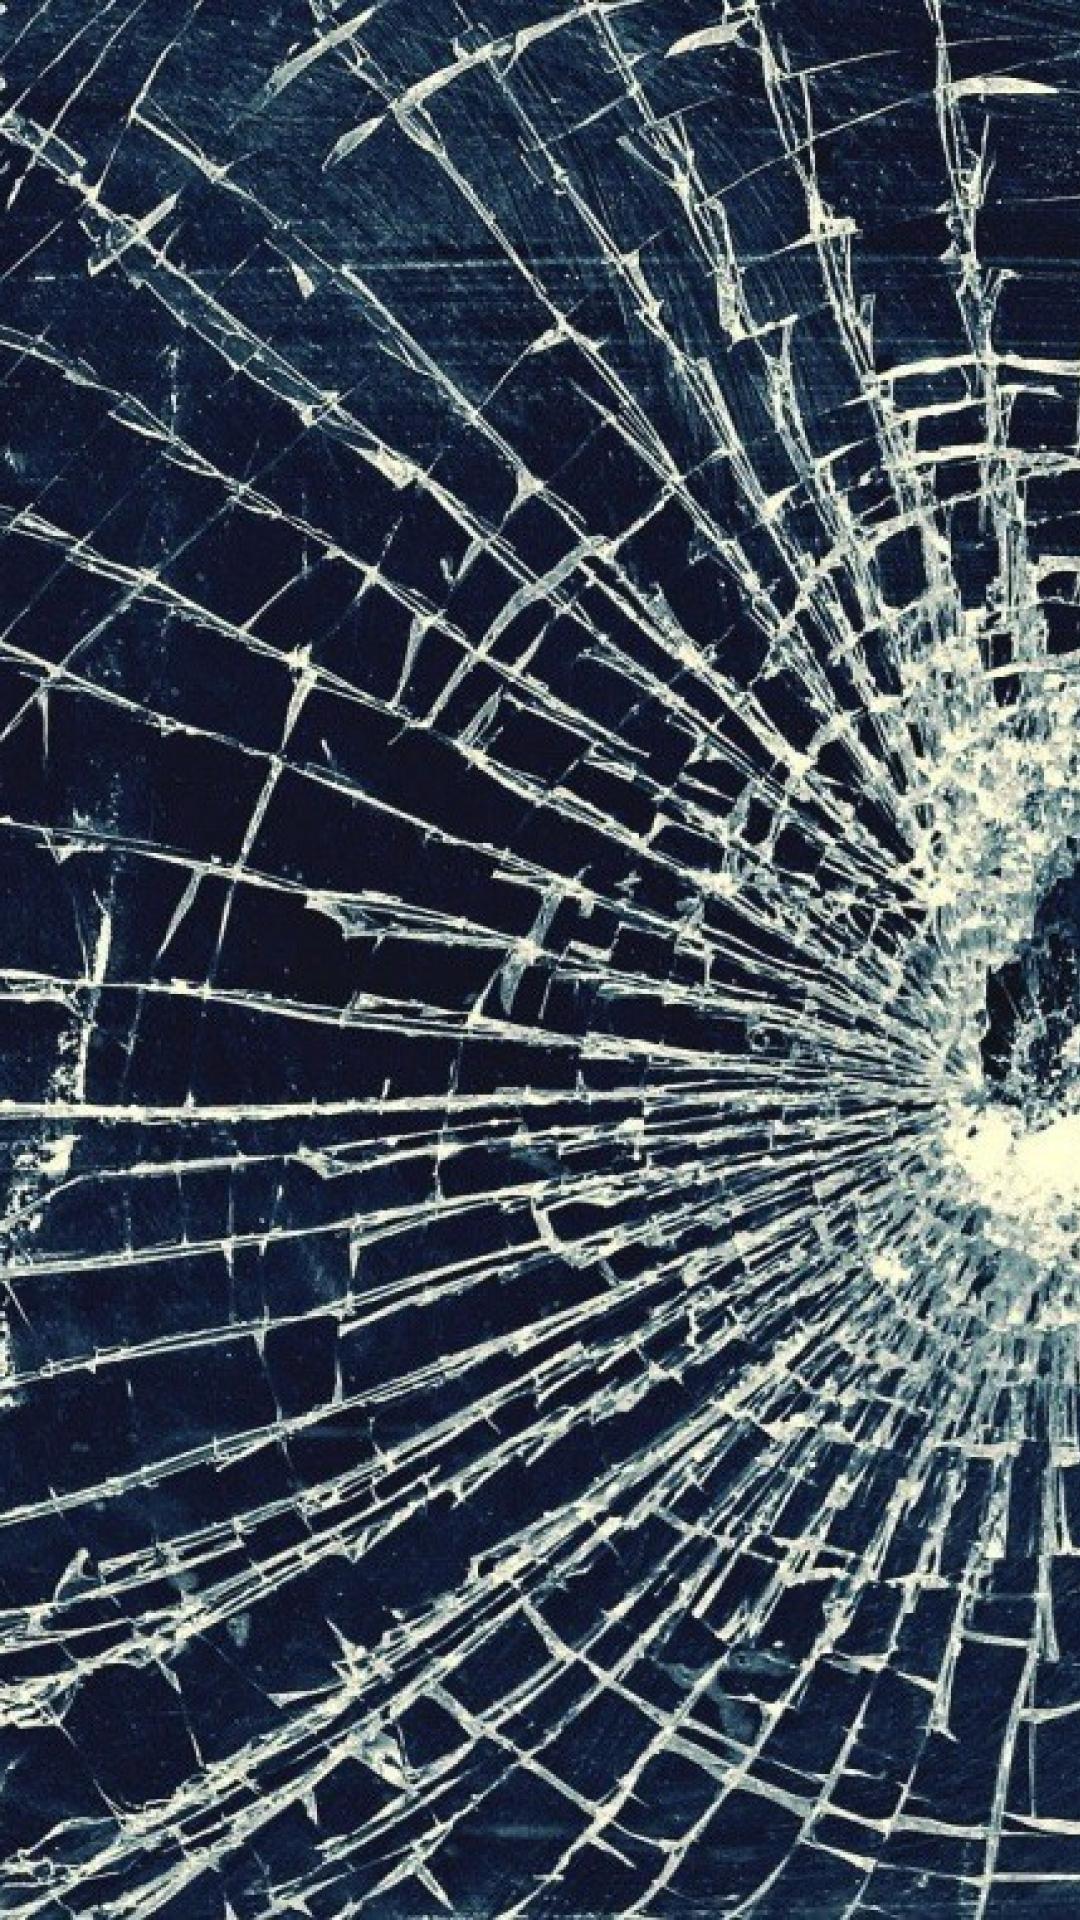 iPhone broken glass wallpaper | Hans Kainz | Flickr